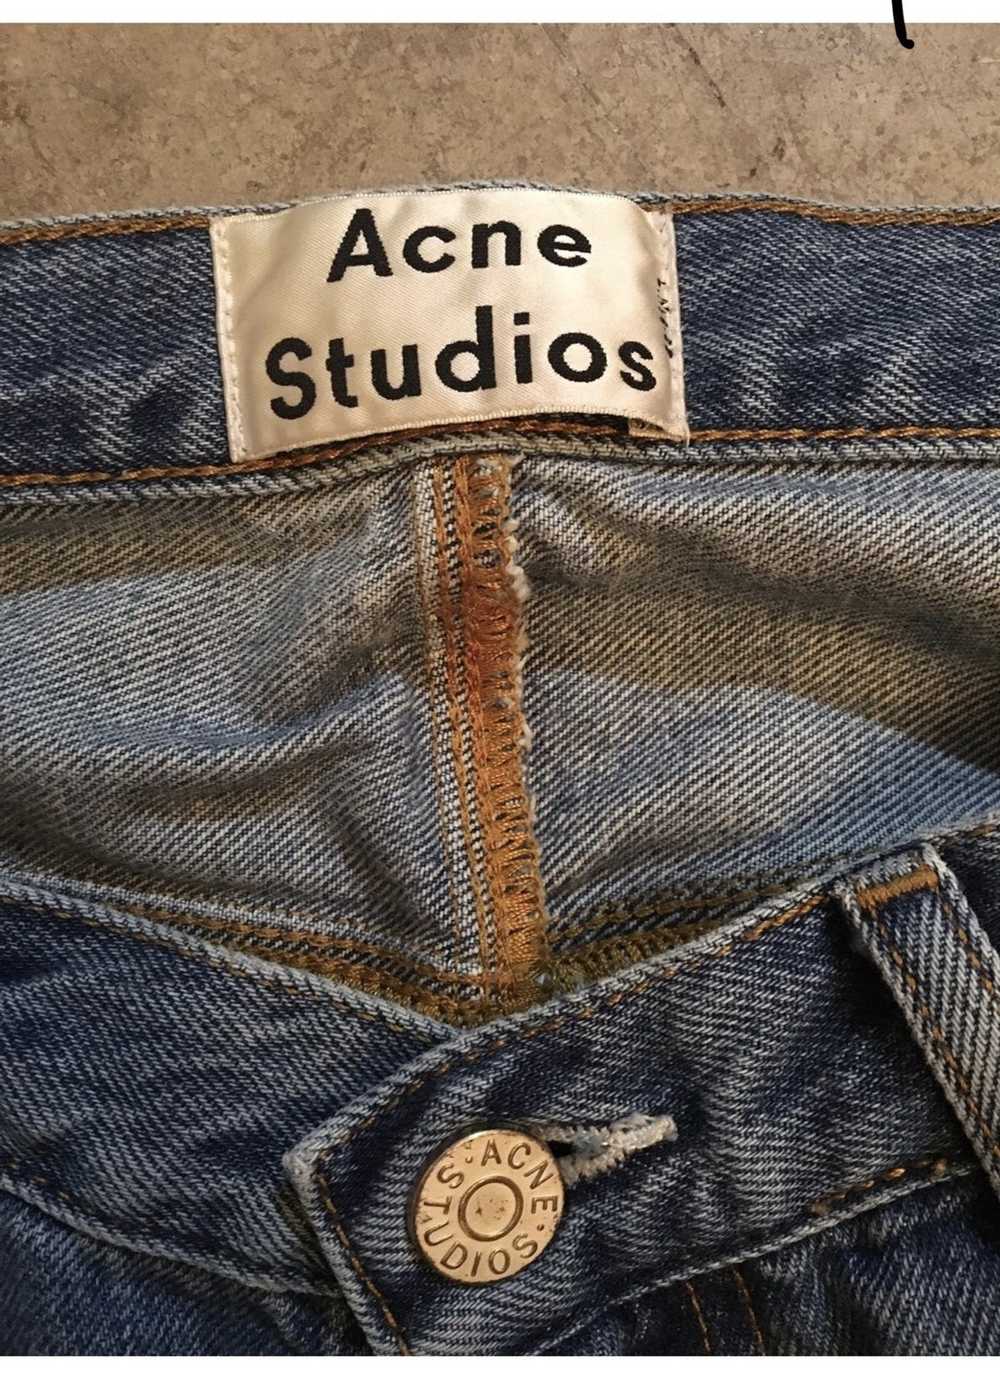 Acne Studios Skinny Jeans - image 2